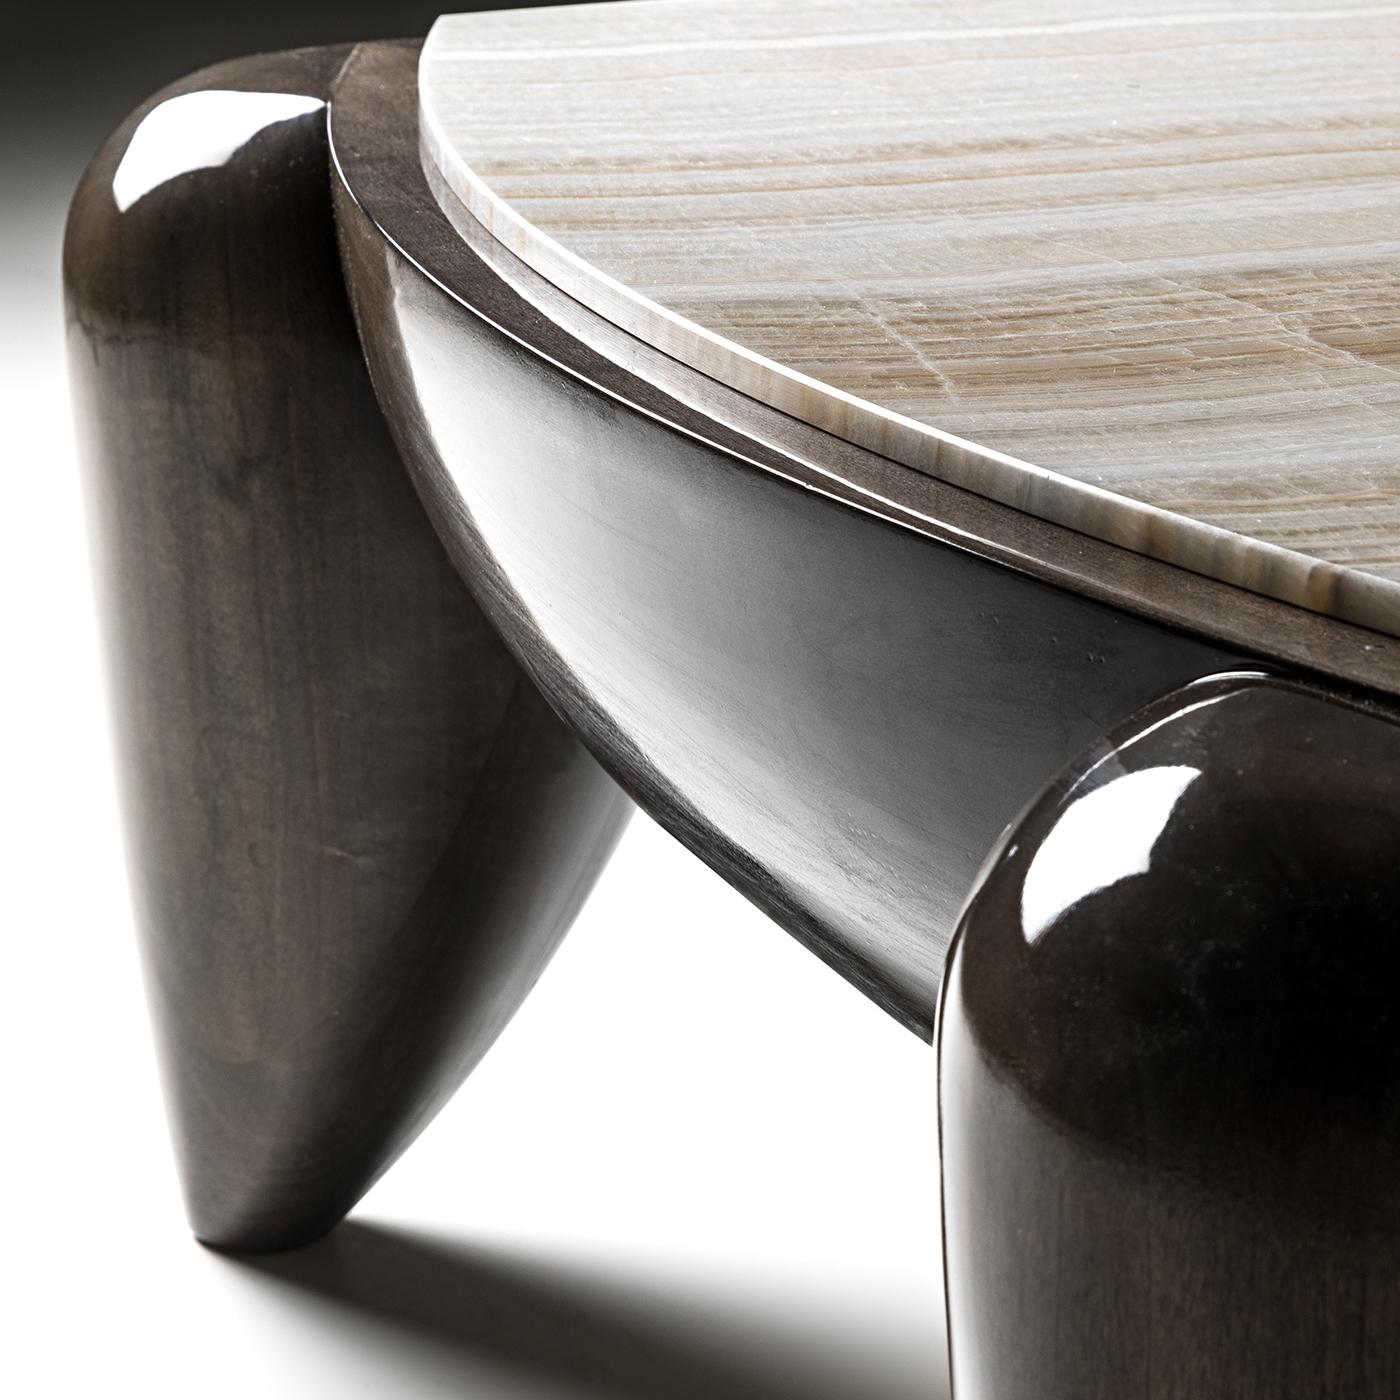 L'eucalyptus brillant et l'onyx ivoire prisé distinguent l'esthétique exceptionnelle de cette élégante table basse. Délicate et charmante, sa silhouette lisse met en valeur un cadre brillant en eucalyptus massif avec un plateau onyx sophistiqué aux